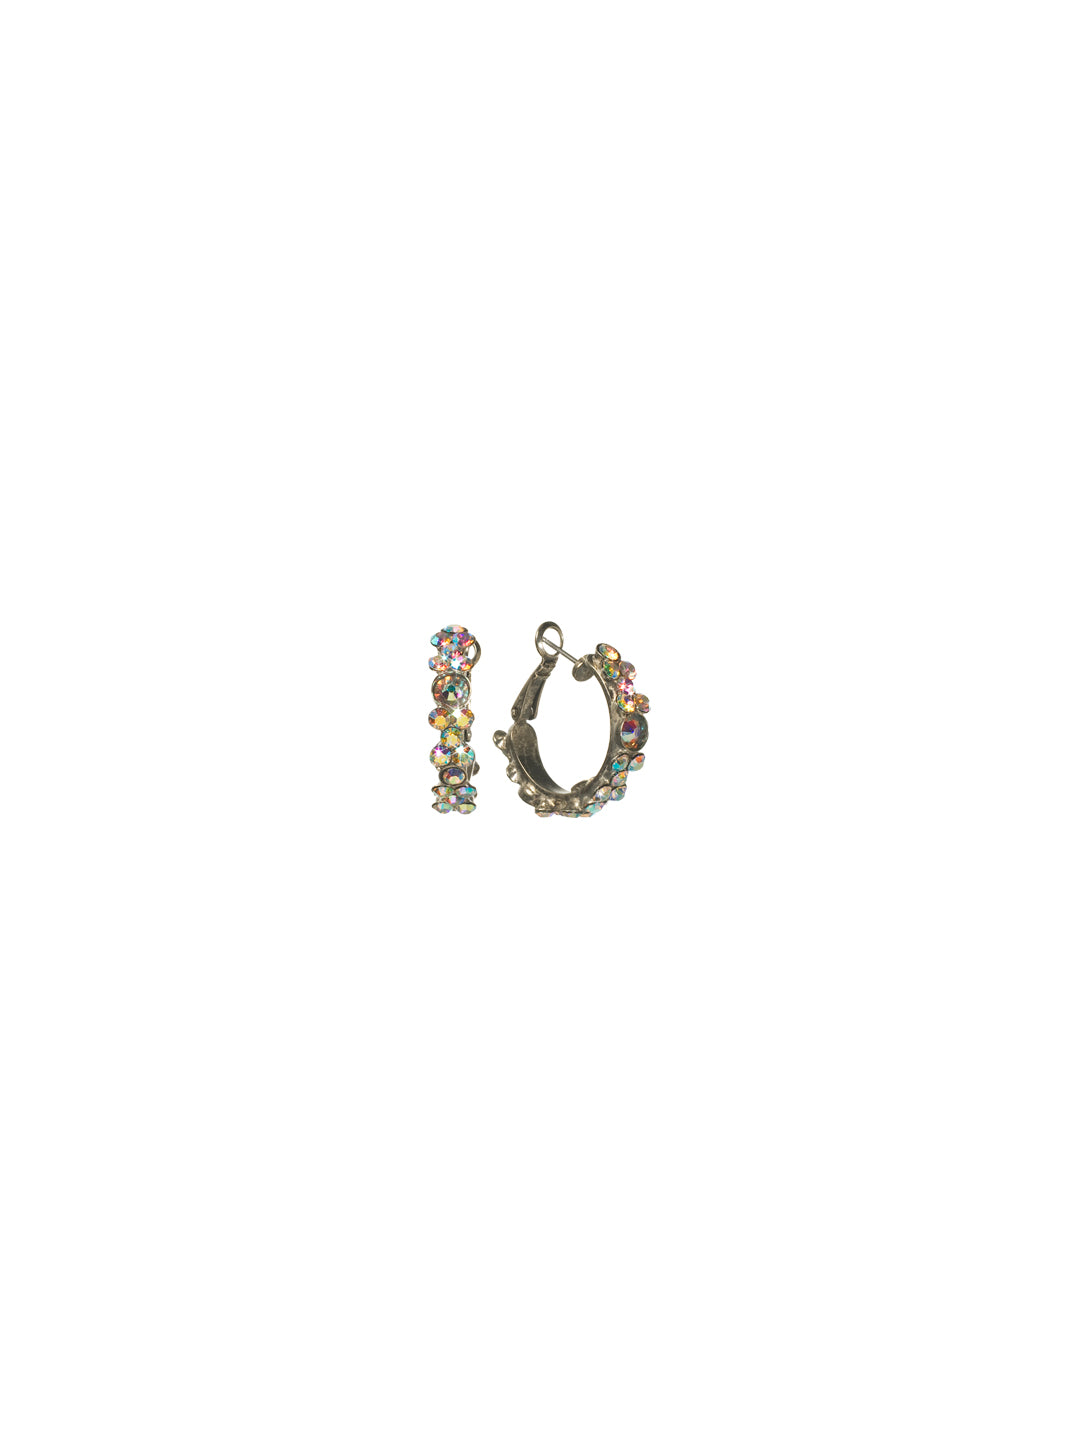 Floral Hoop Earrings - EBP15ASCAB